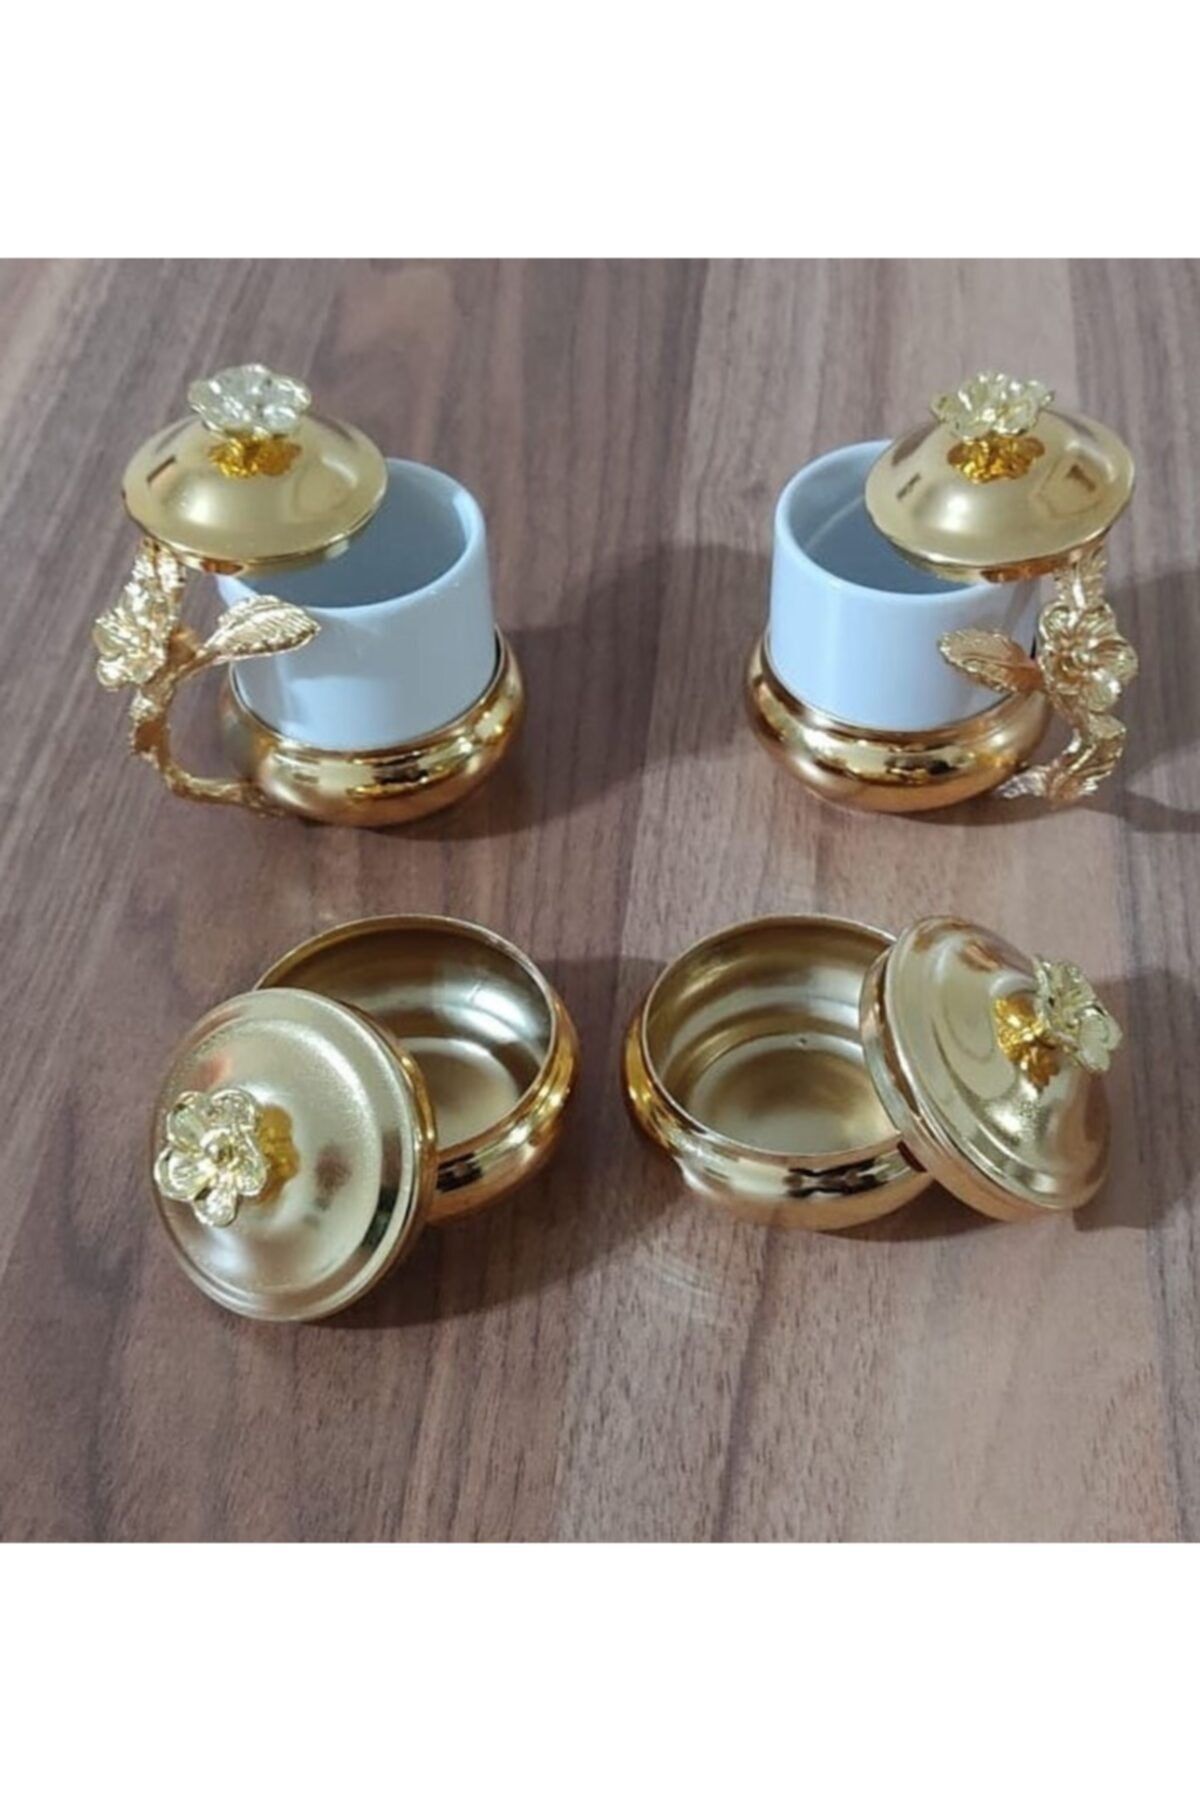 Aker Hediyelik Damat Kahvesi Damat Fincanı Takımı Söz Isteme Gold Kahve Fincanı Takımları Setleri